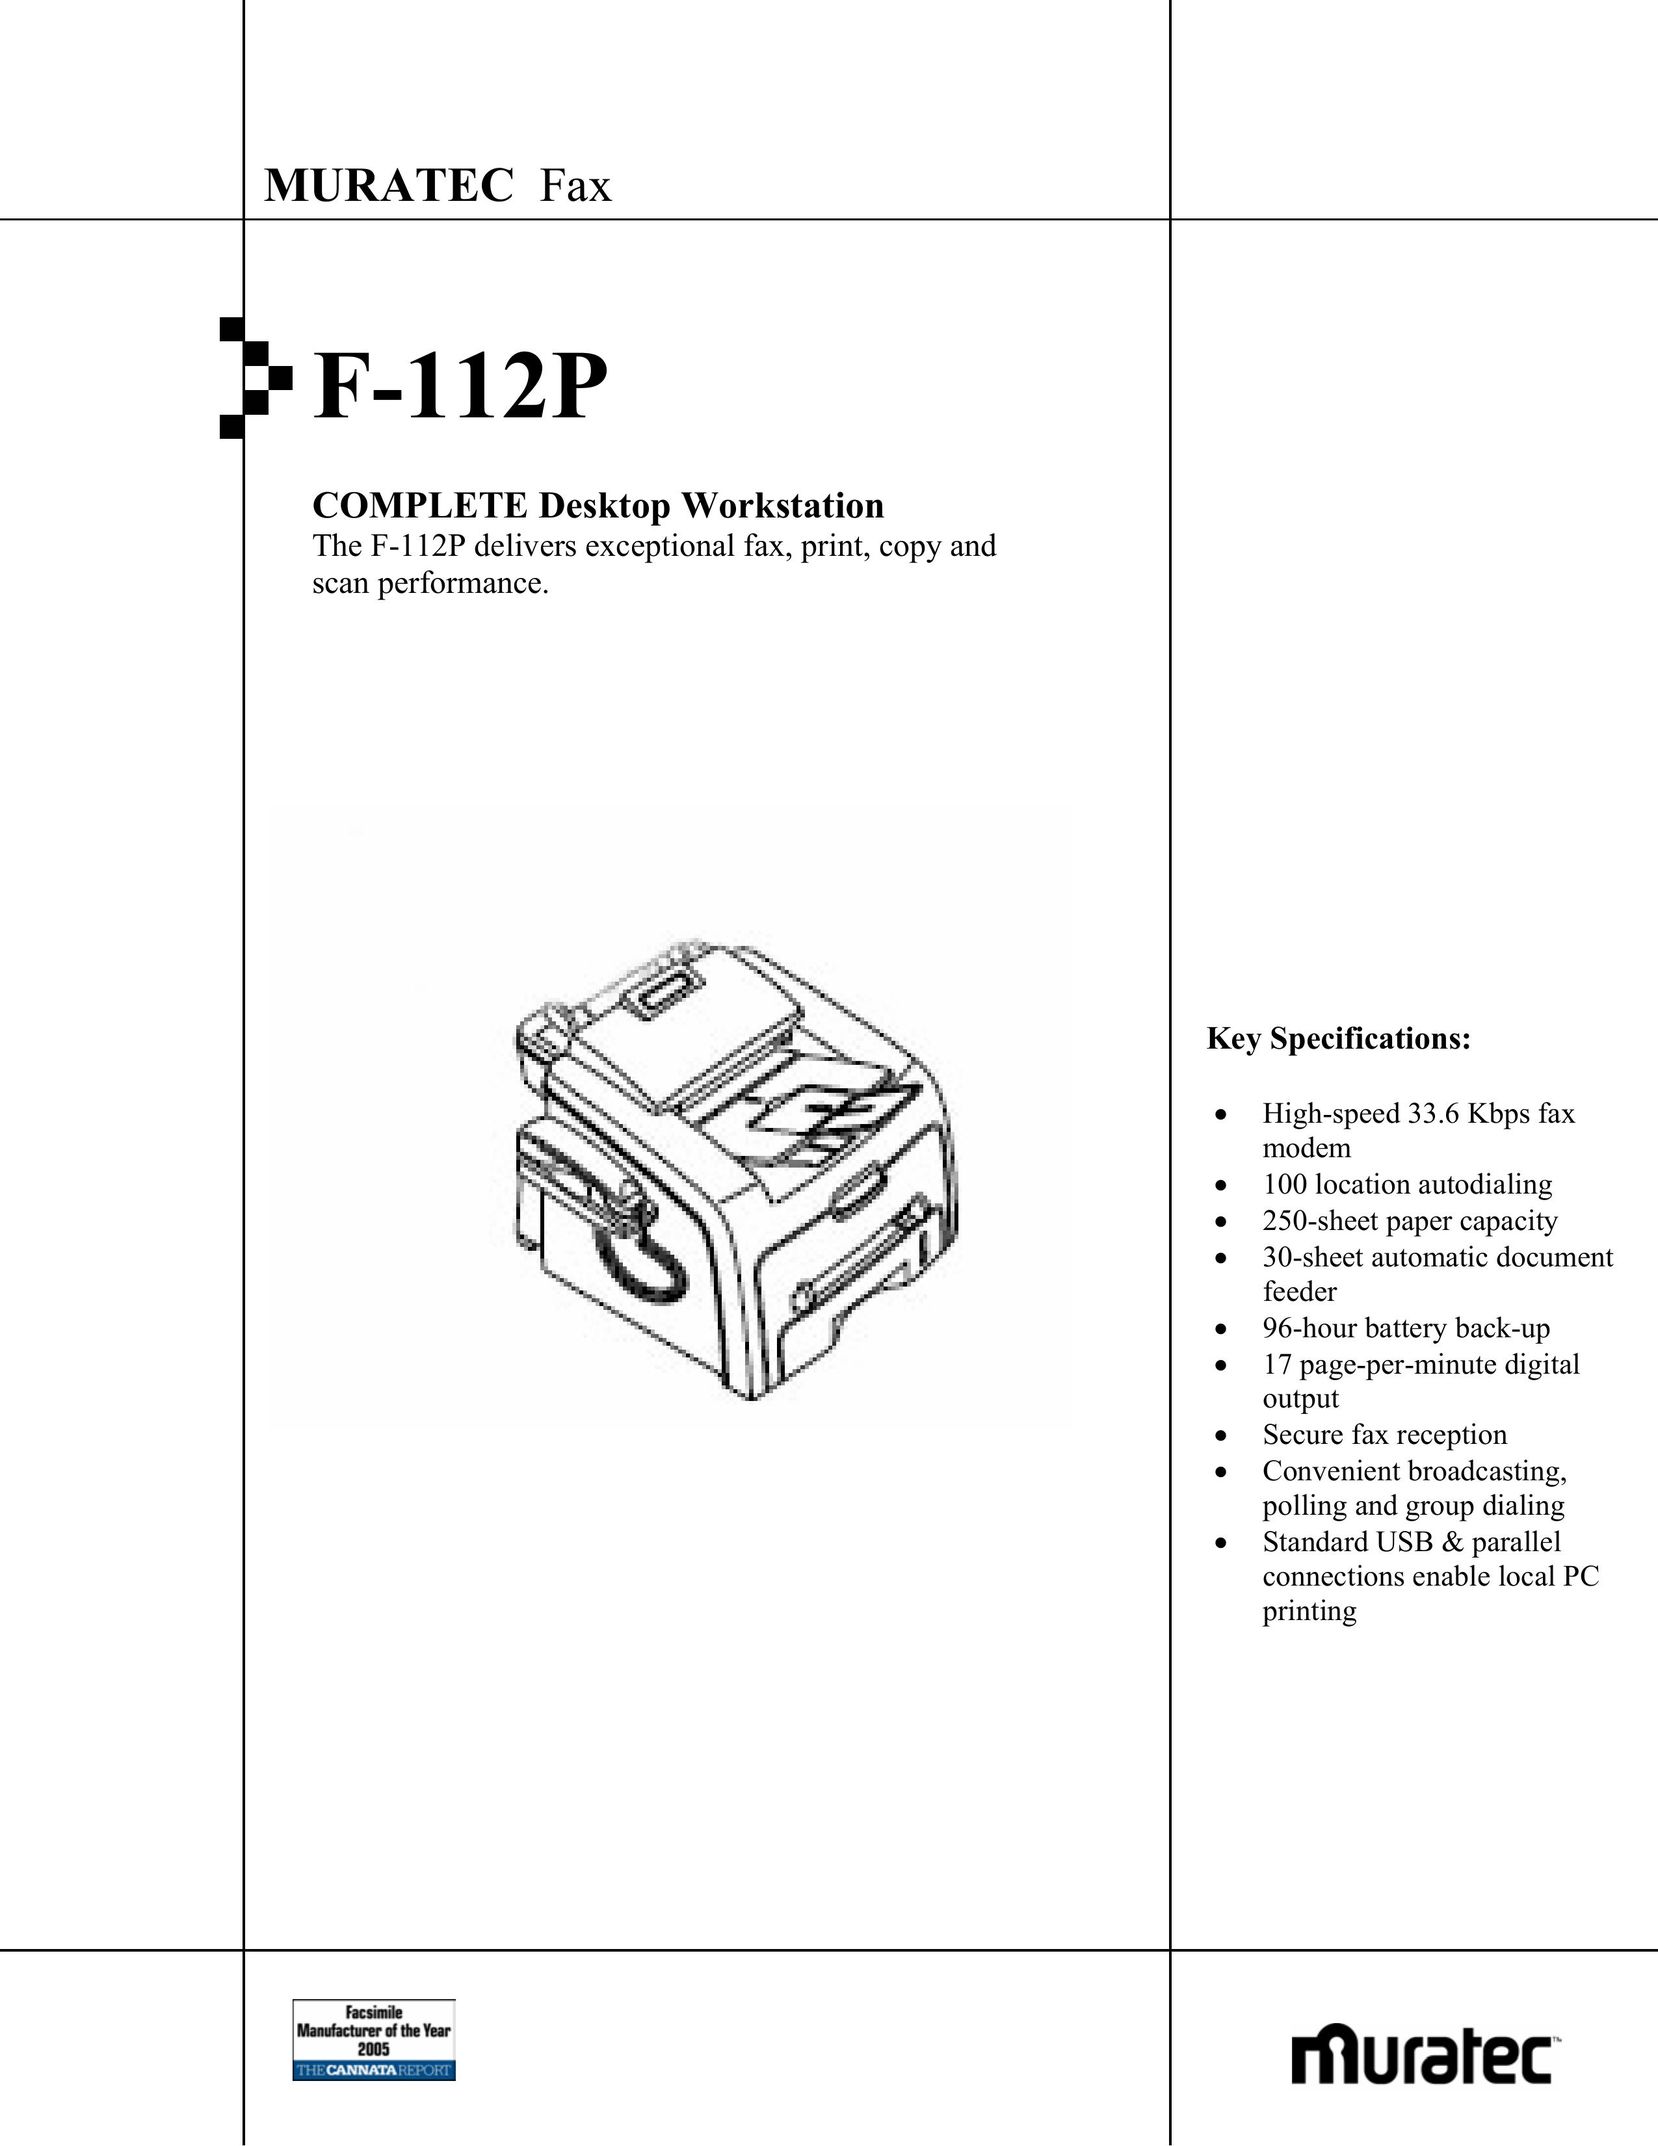 Muratec F-112P All in One Printer User Manual